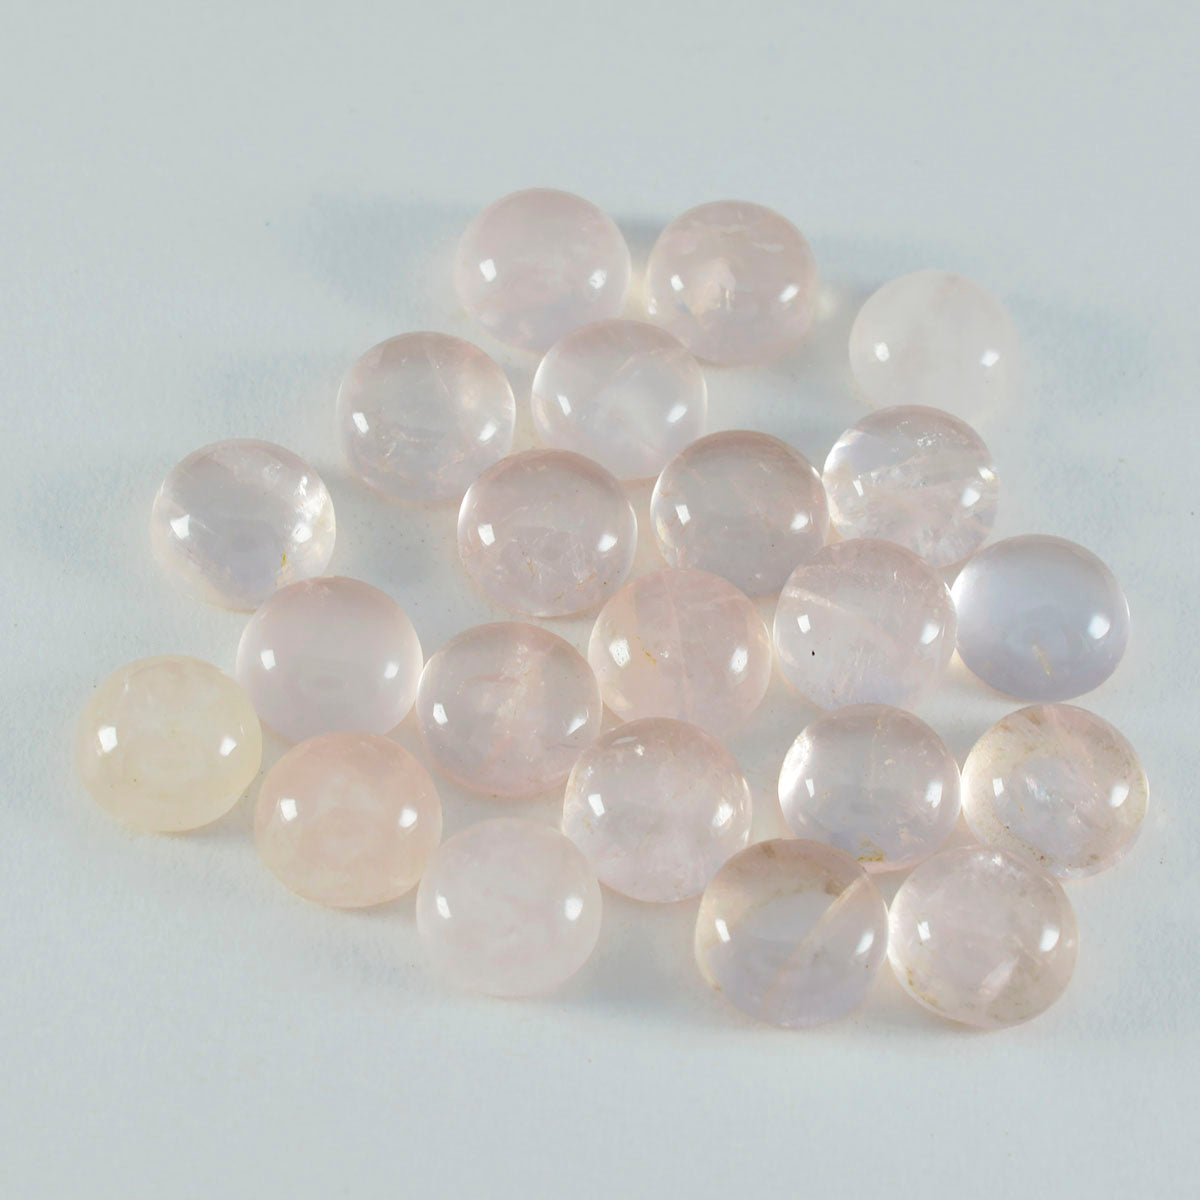 Riyogems 1pc cabochon de quartz rose rose 6x6mm forme ronde a1 qualité pierres précieuses en vrac